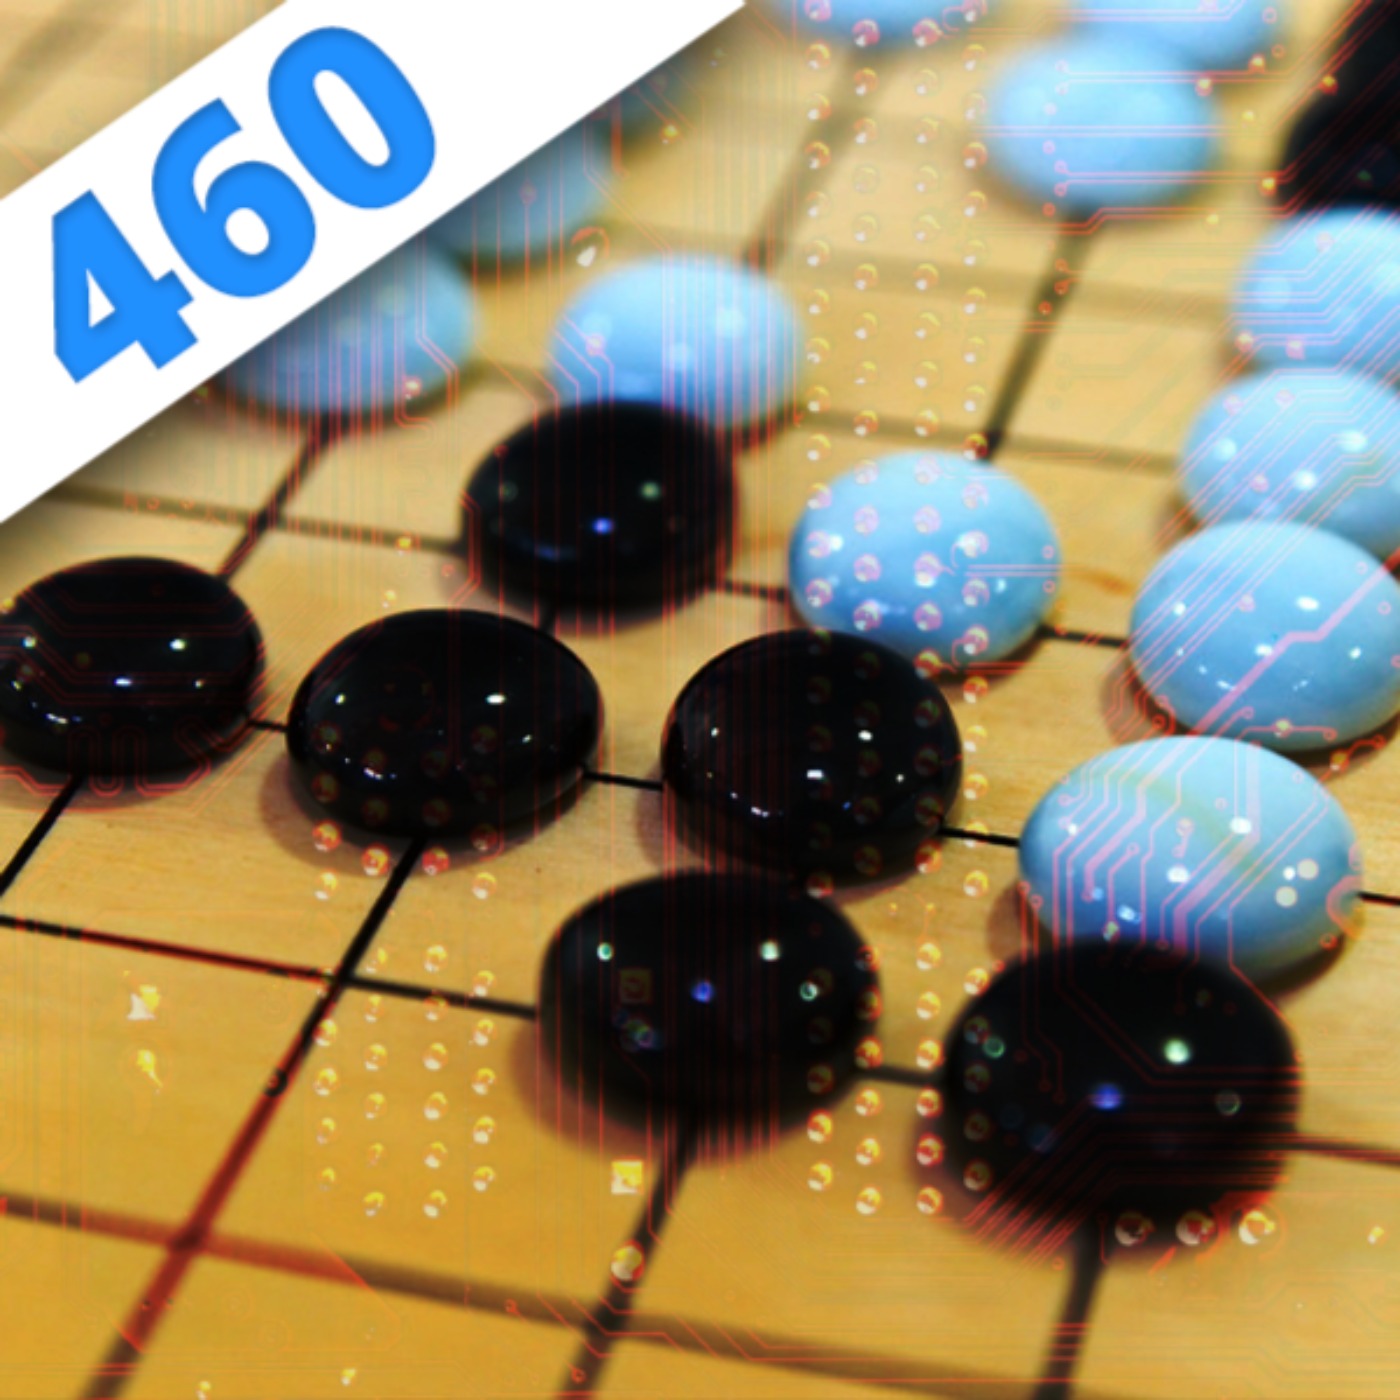 460 - Alpha Go : l'algo qui bat l'ego